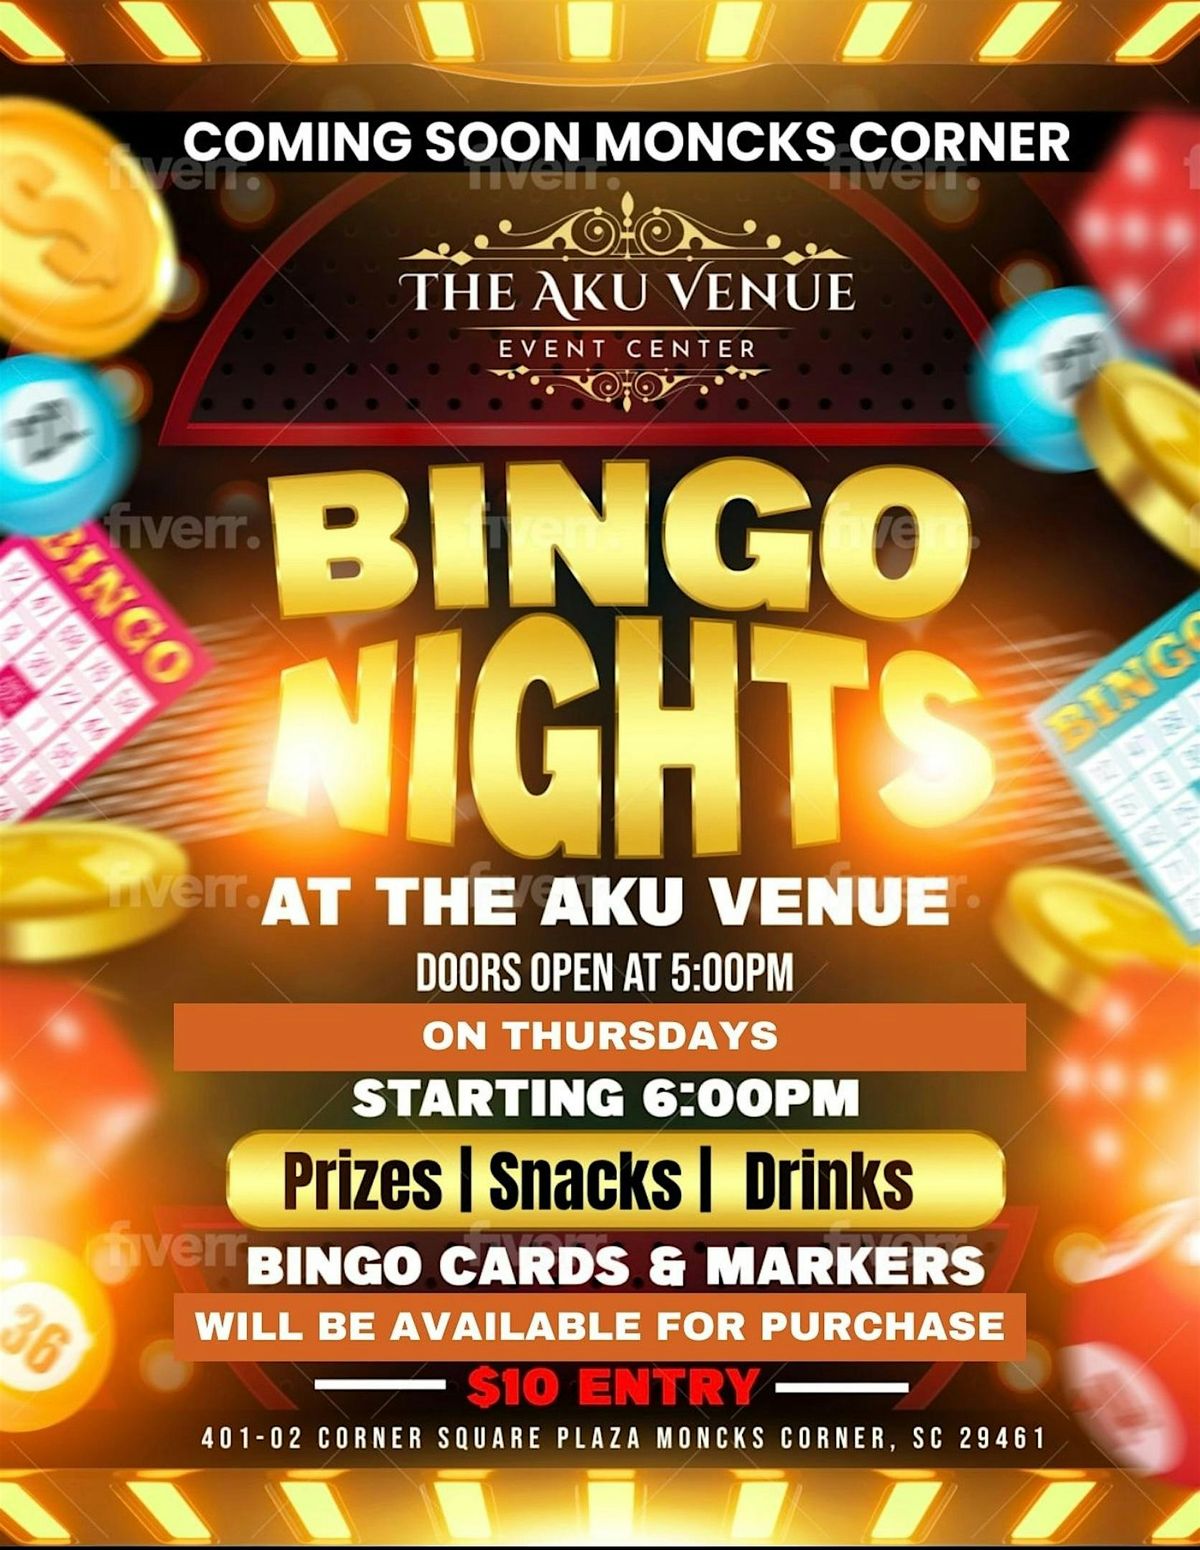 Bingo Nights @ The Aku Venue